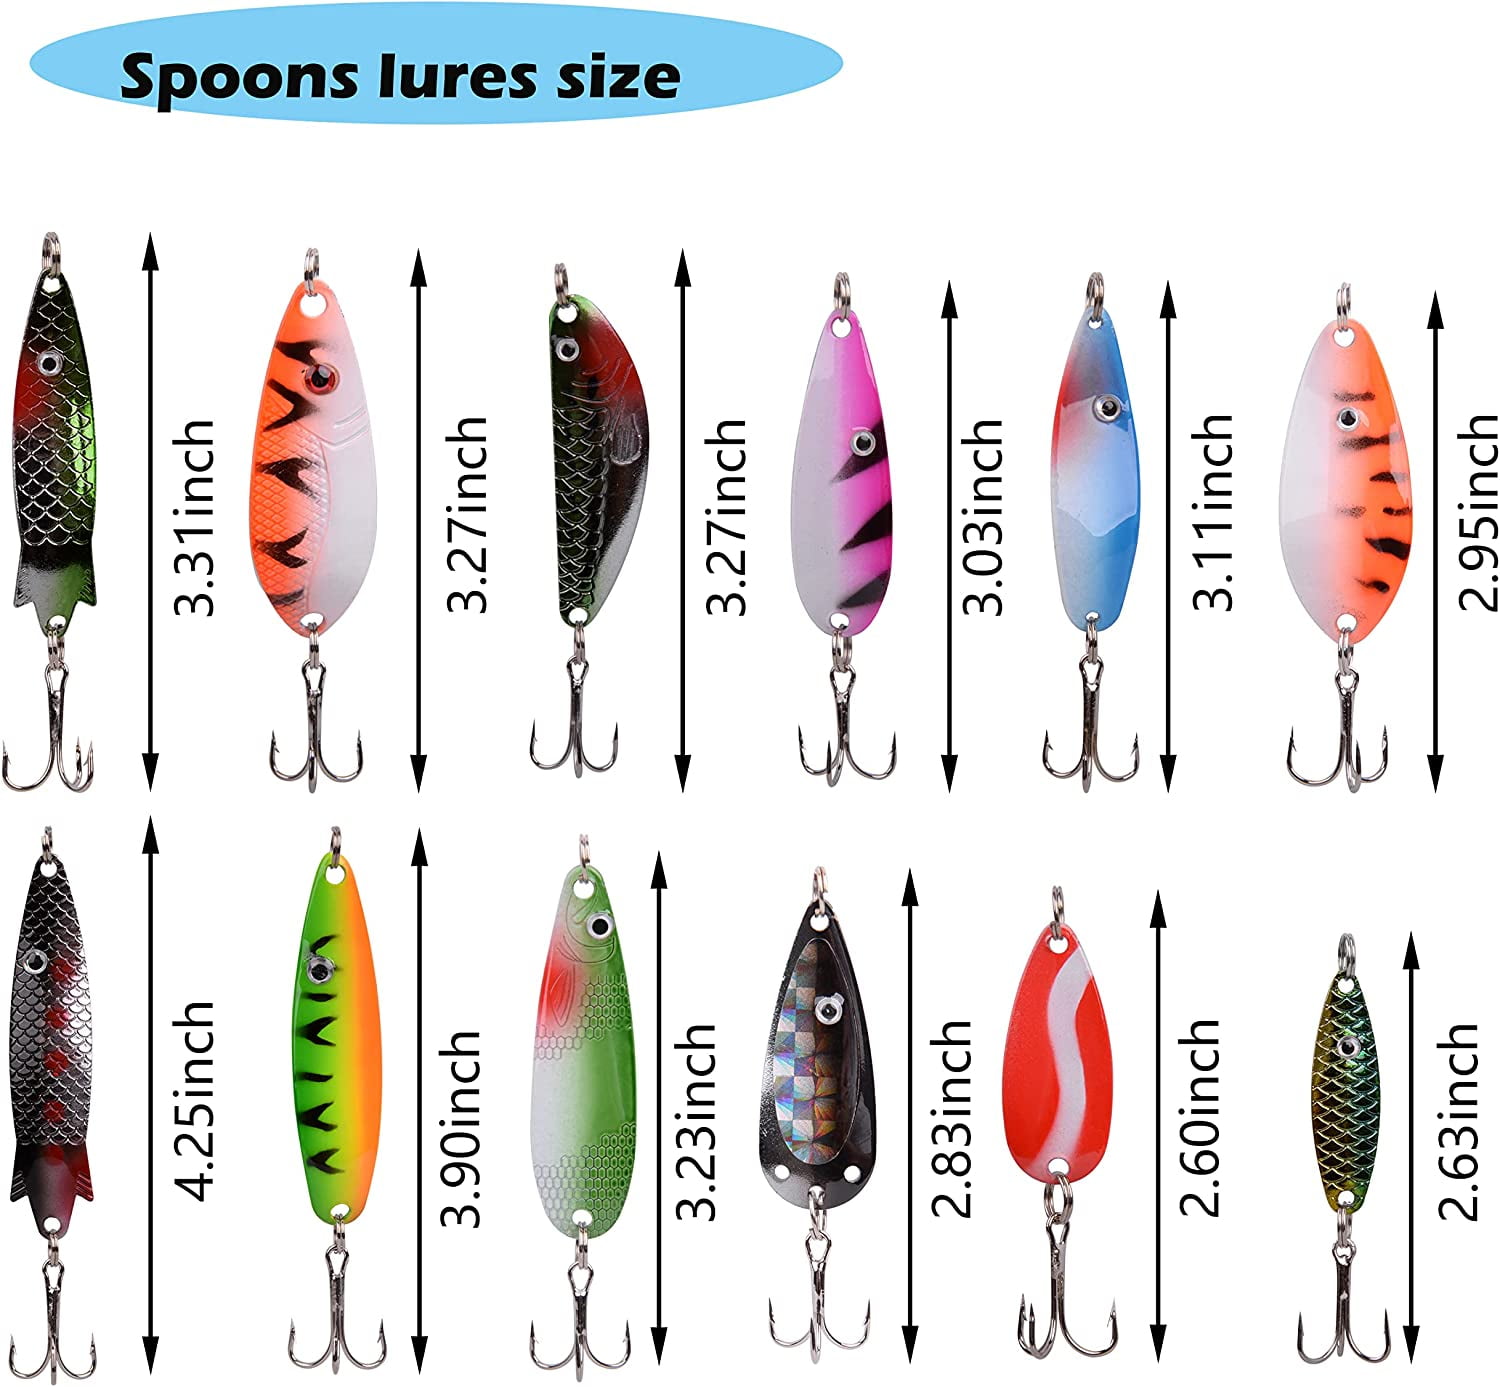 OROOTL Fishing Lures Kit, 30pcs Metal Spoon Lures Inline